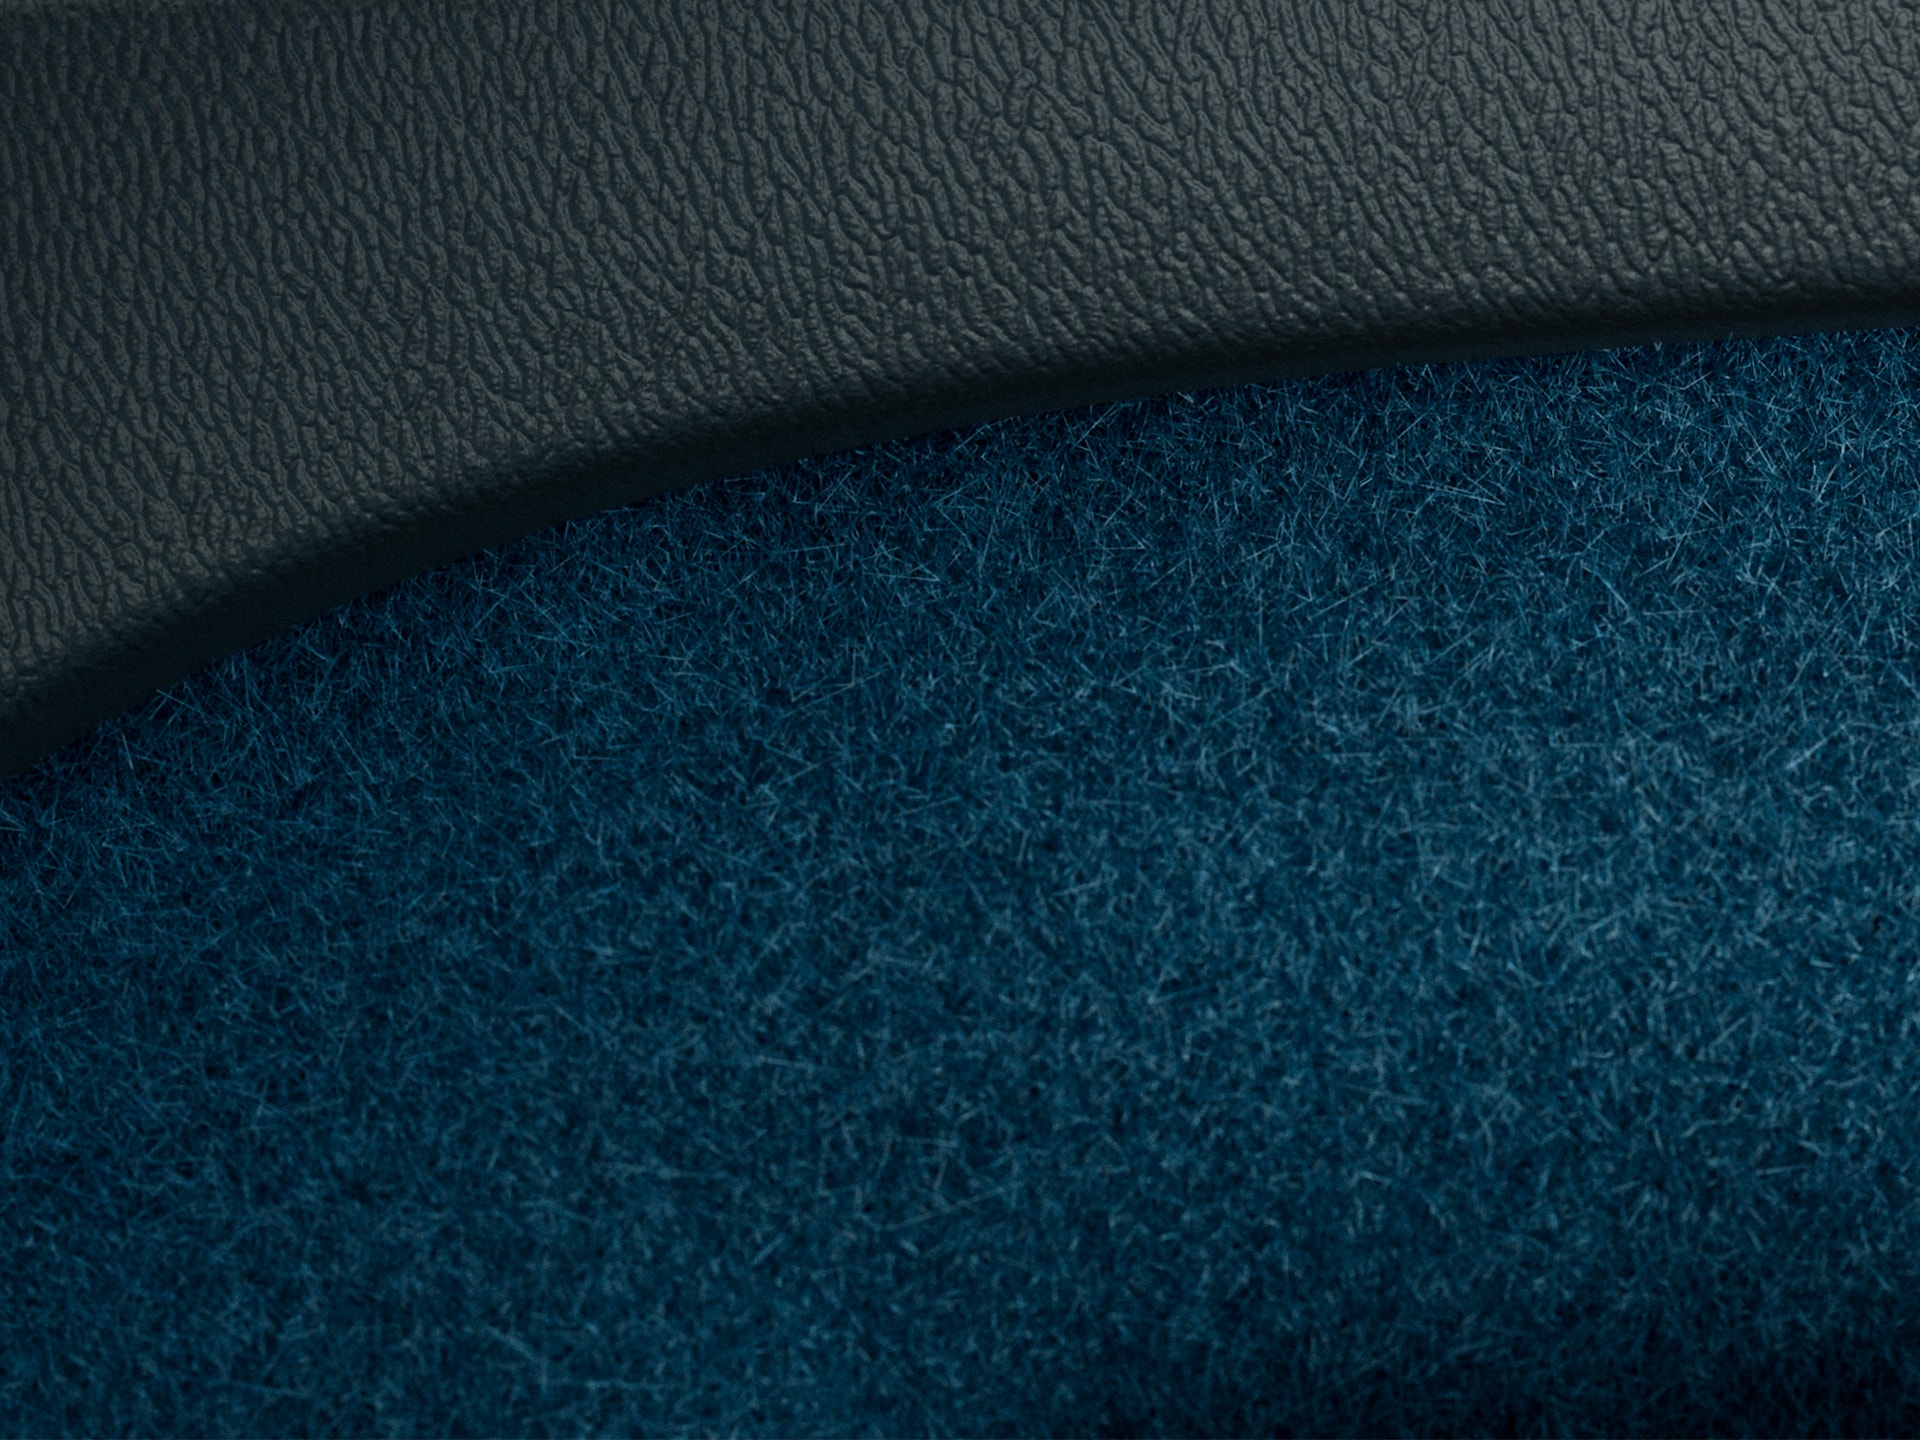 Цвят Fjord blue, частично рециклирани подови покрития в плъгин хибрид Volvo XC40 Recharge.